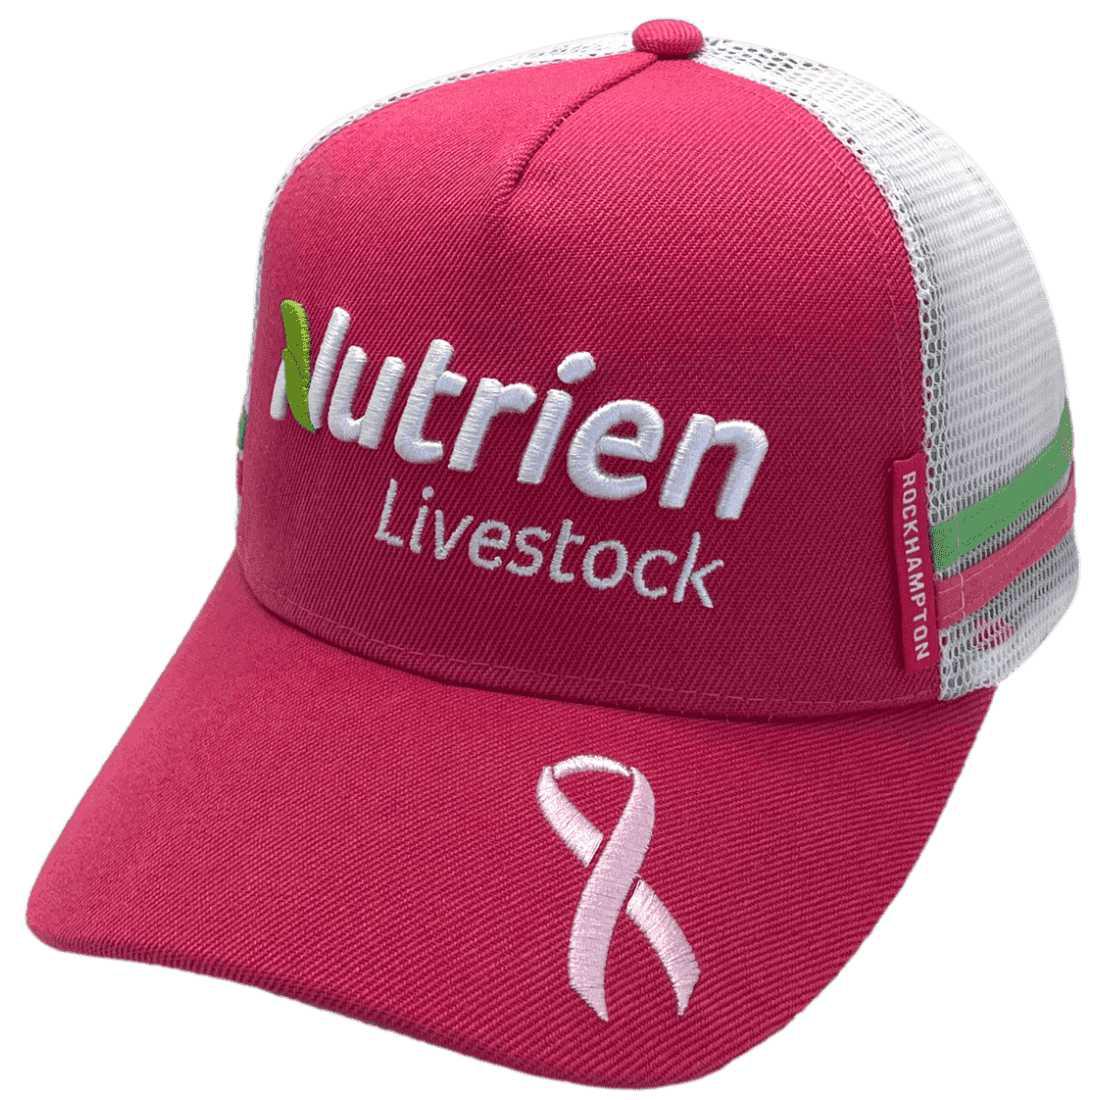 Nutrien Livestock - Midrange Aussie Trucker Hat